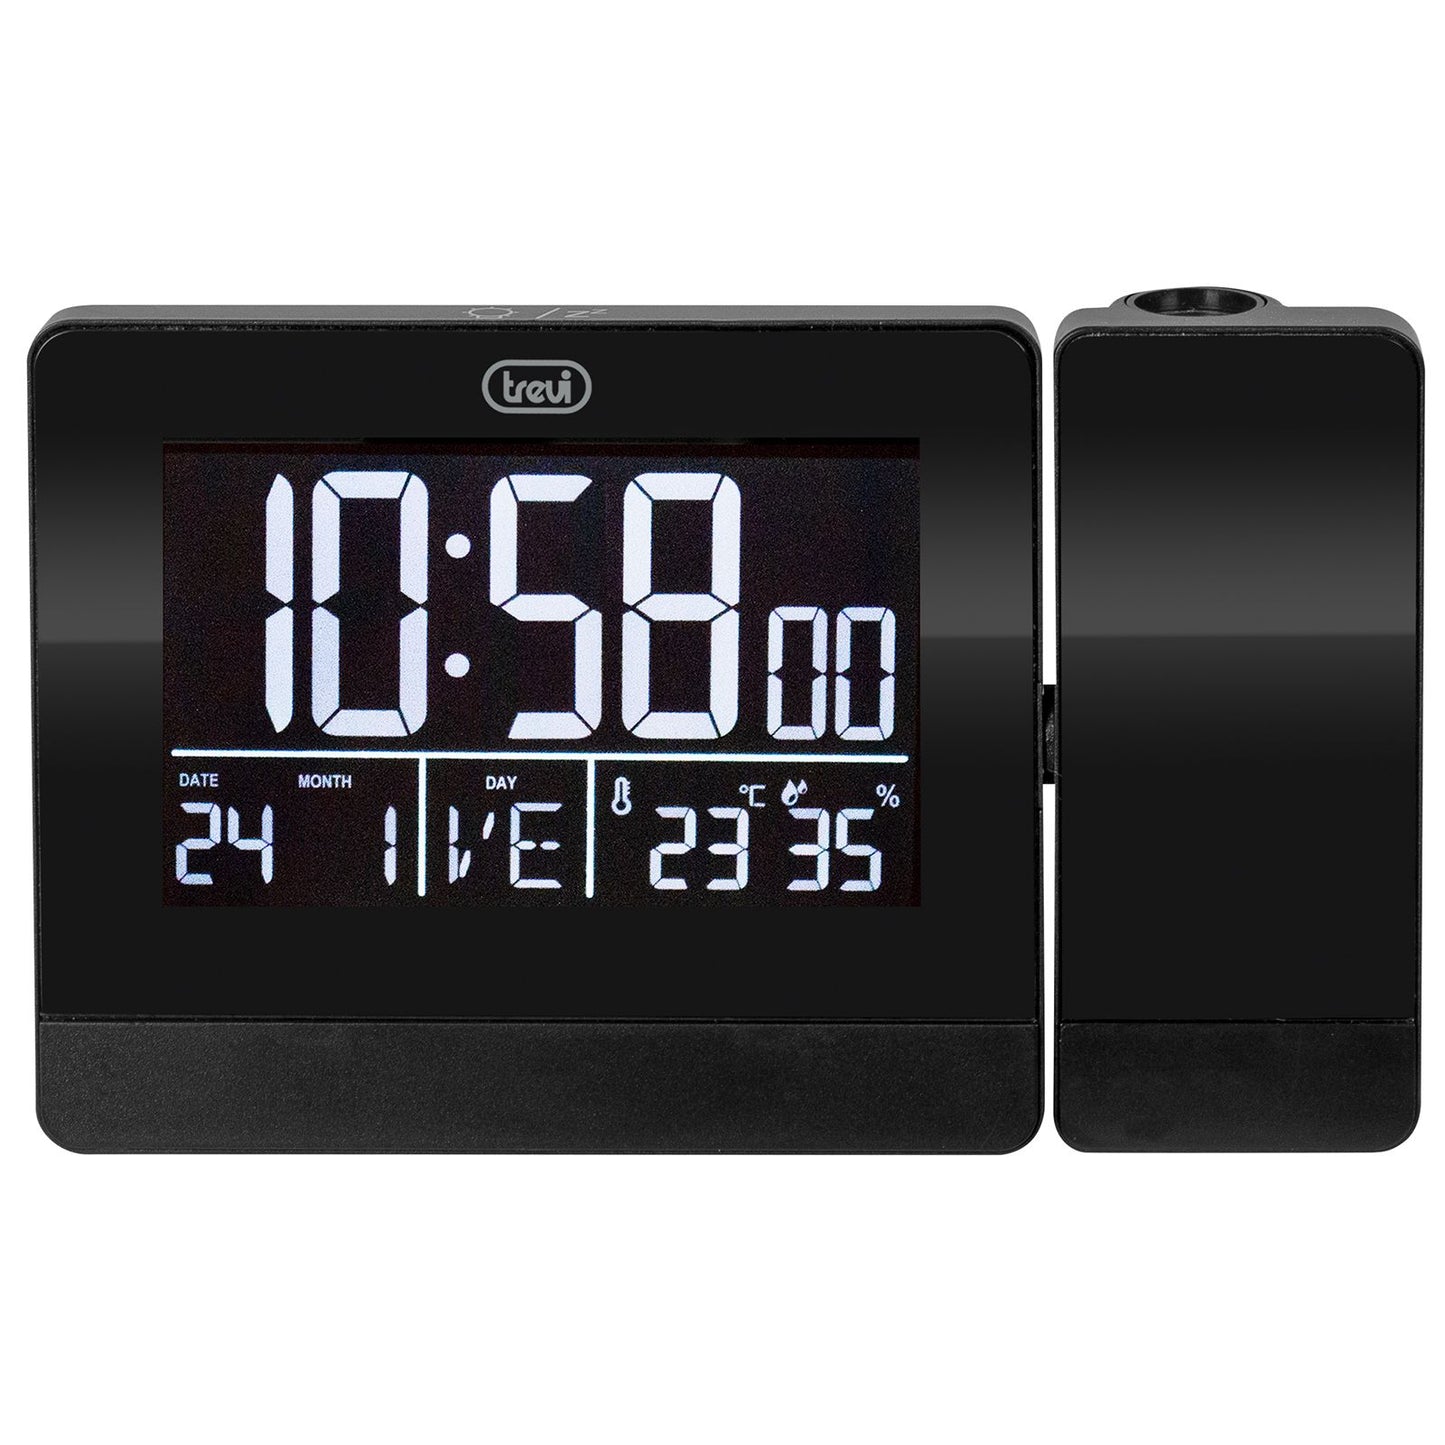 Trevi orologio con display grande e illuminazione bianca, sveglia con proiezione dell'orario, regolazione della rotazione fino a 90°